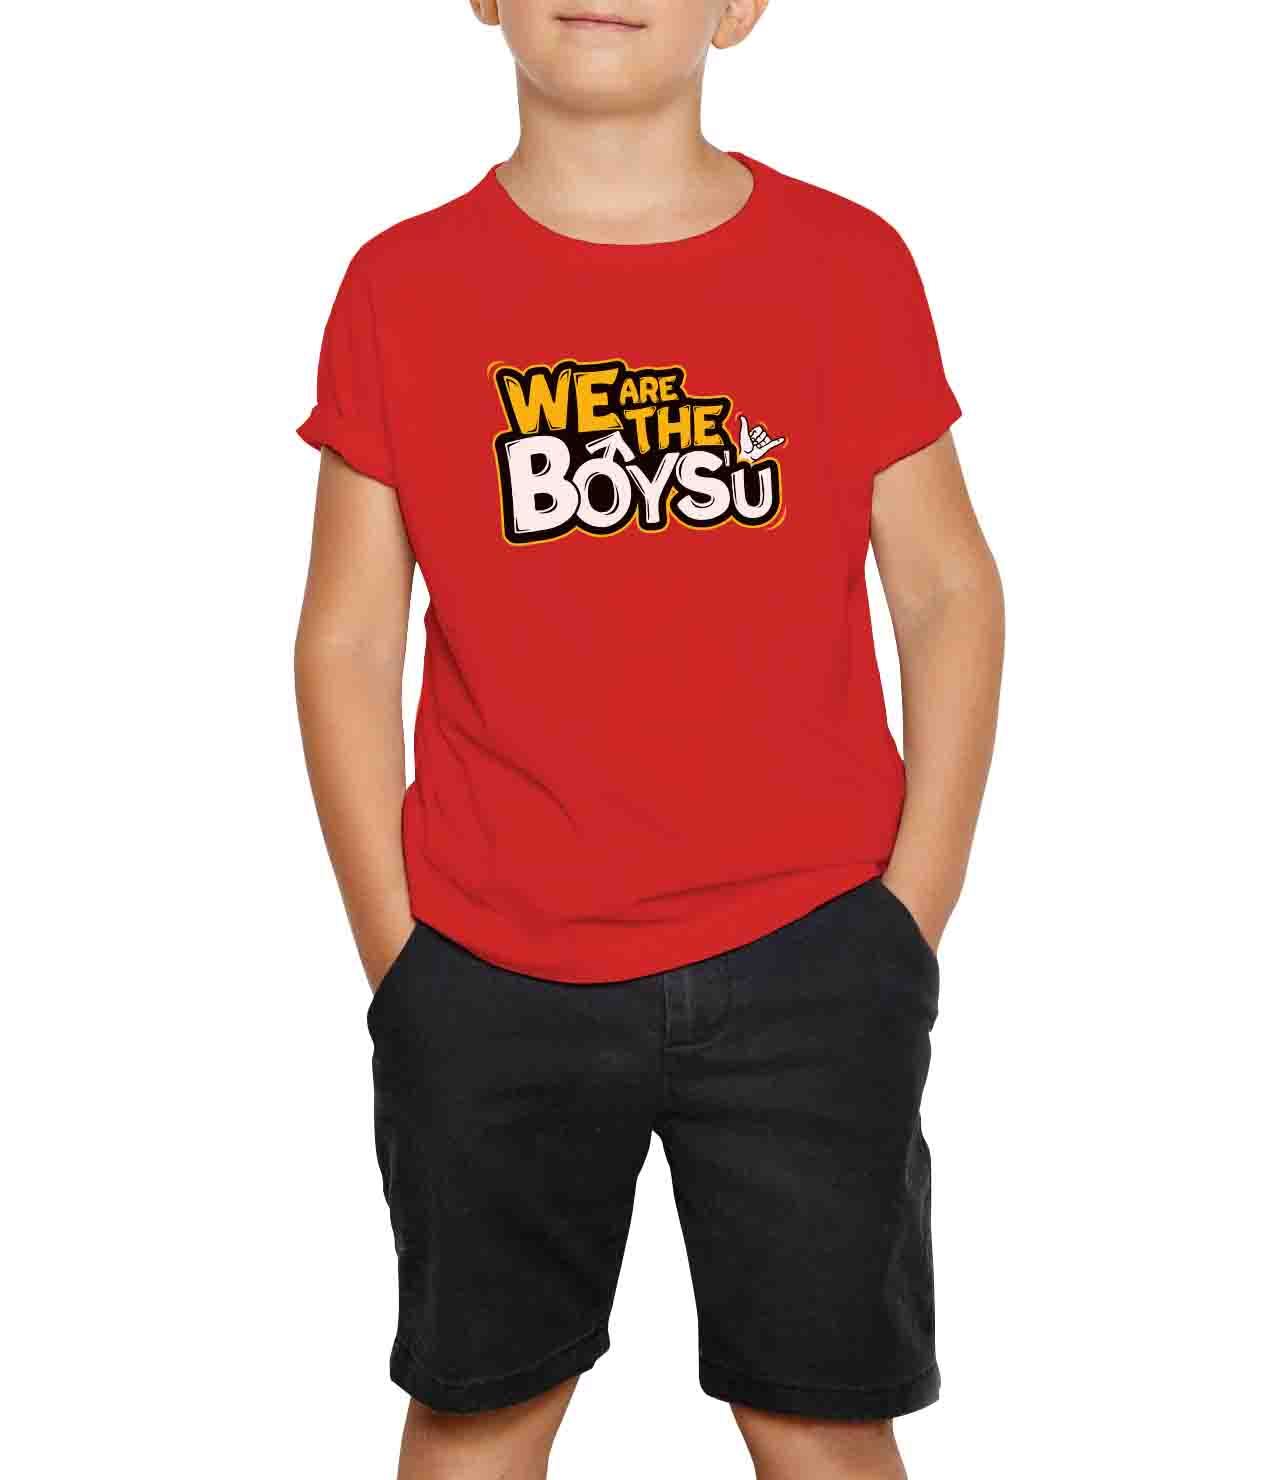 red tshirt for boys